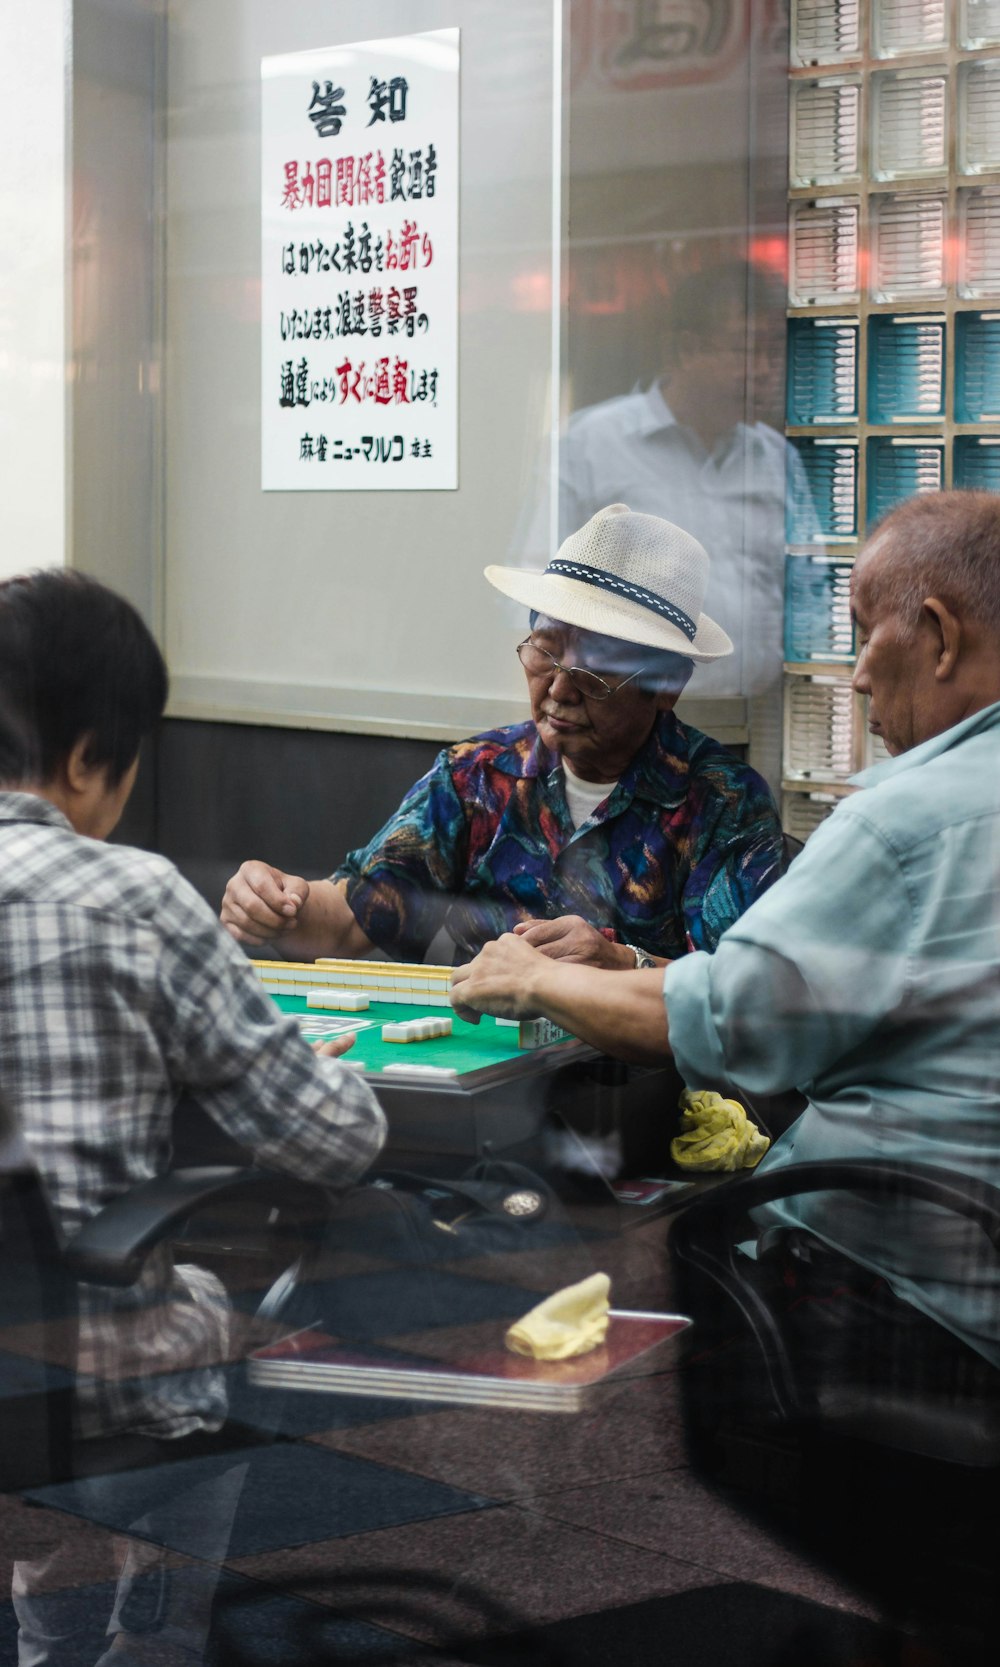 trois hommes assis jouant au mahjong à l’intérieur de la pièce